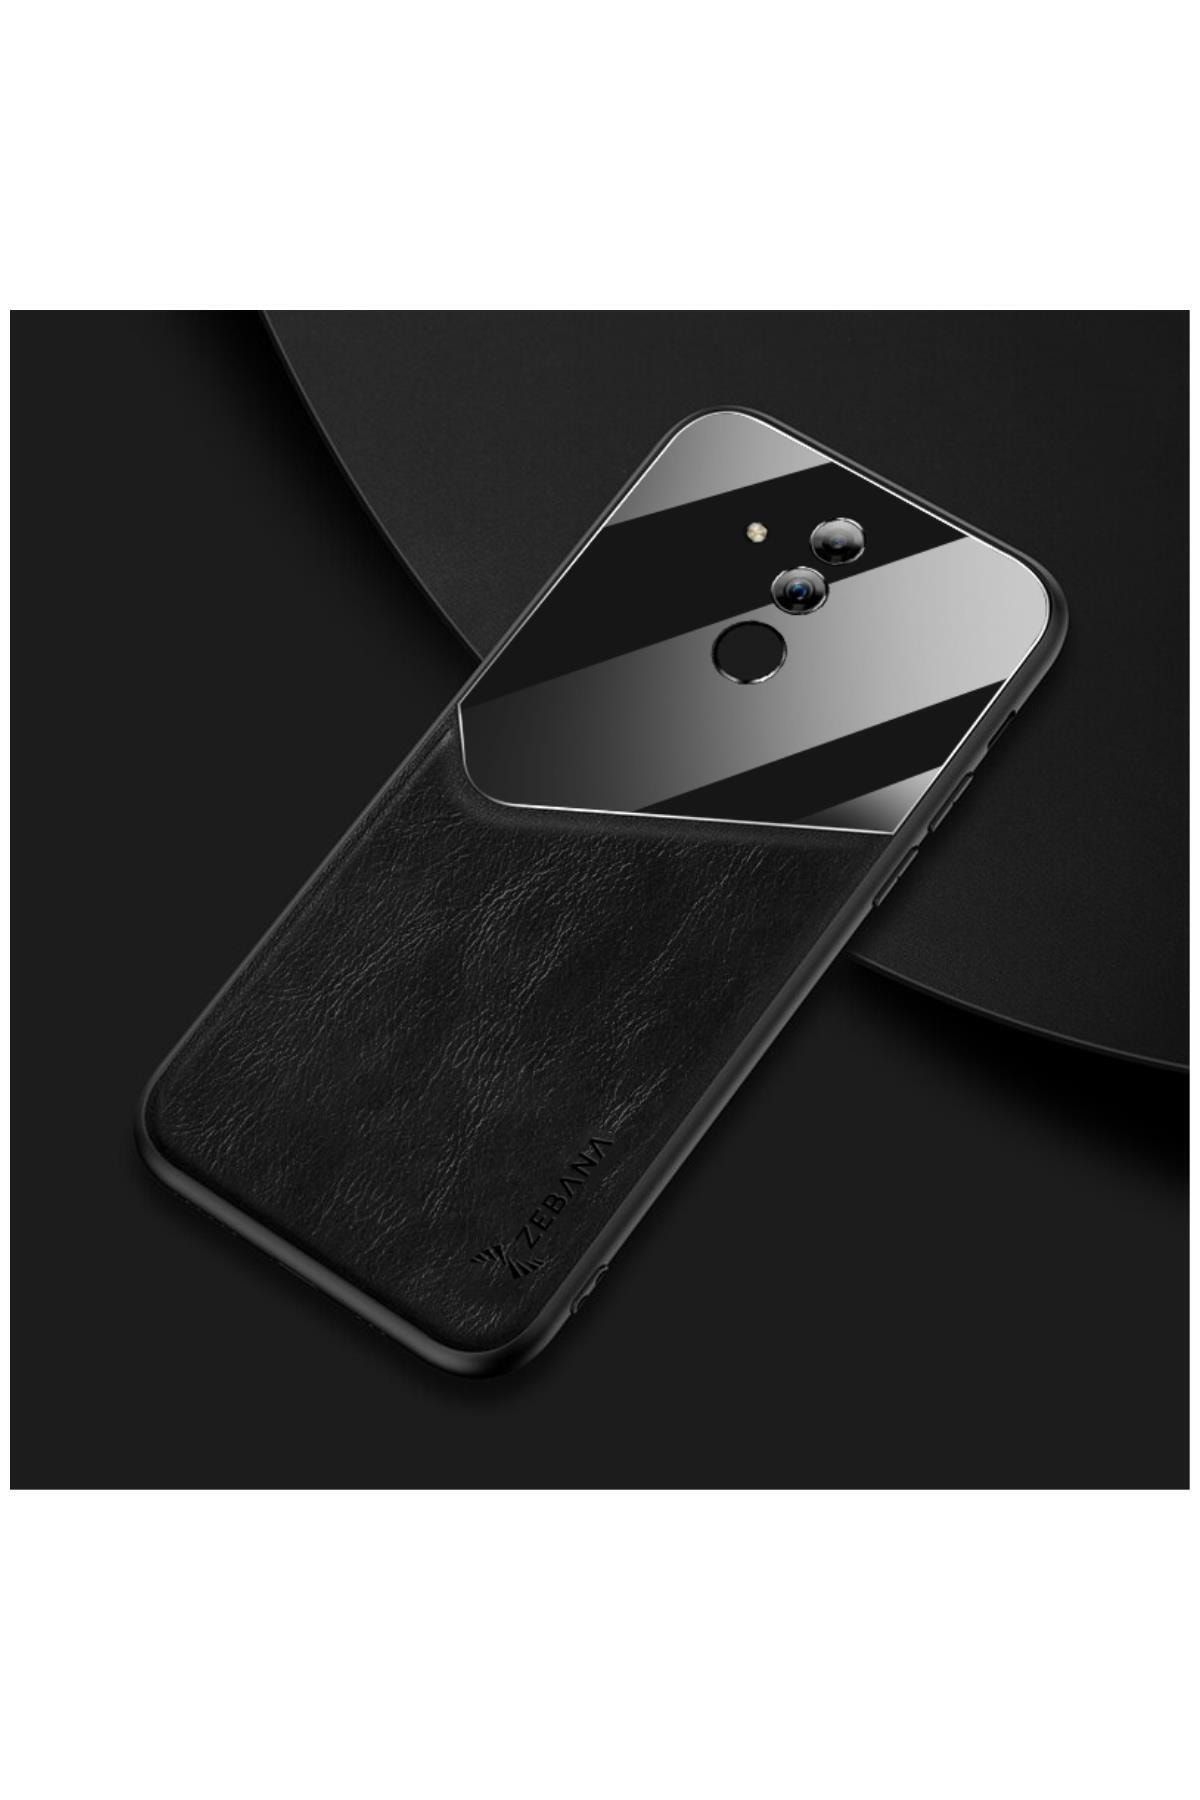 Dara Aksesuar Huawei Mate 20 Lite Uyumlu Telefon Kılıfı Zebana New Fashion Deri Kılıf Siyah